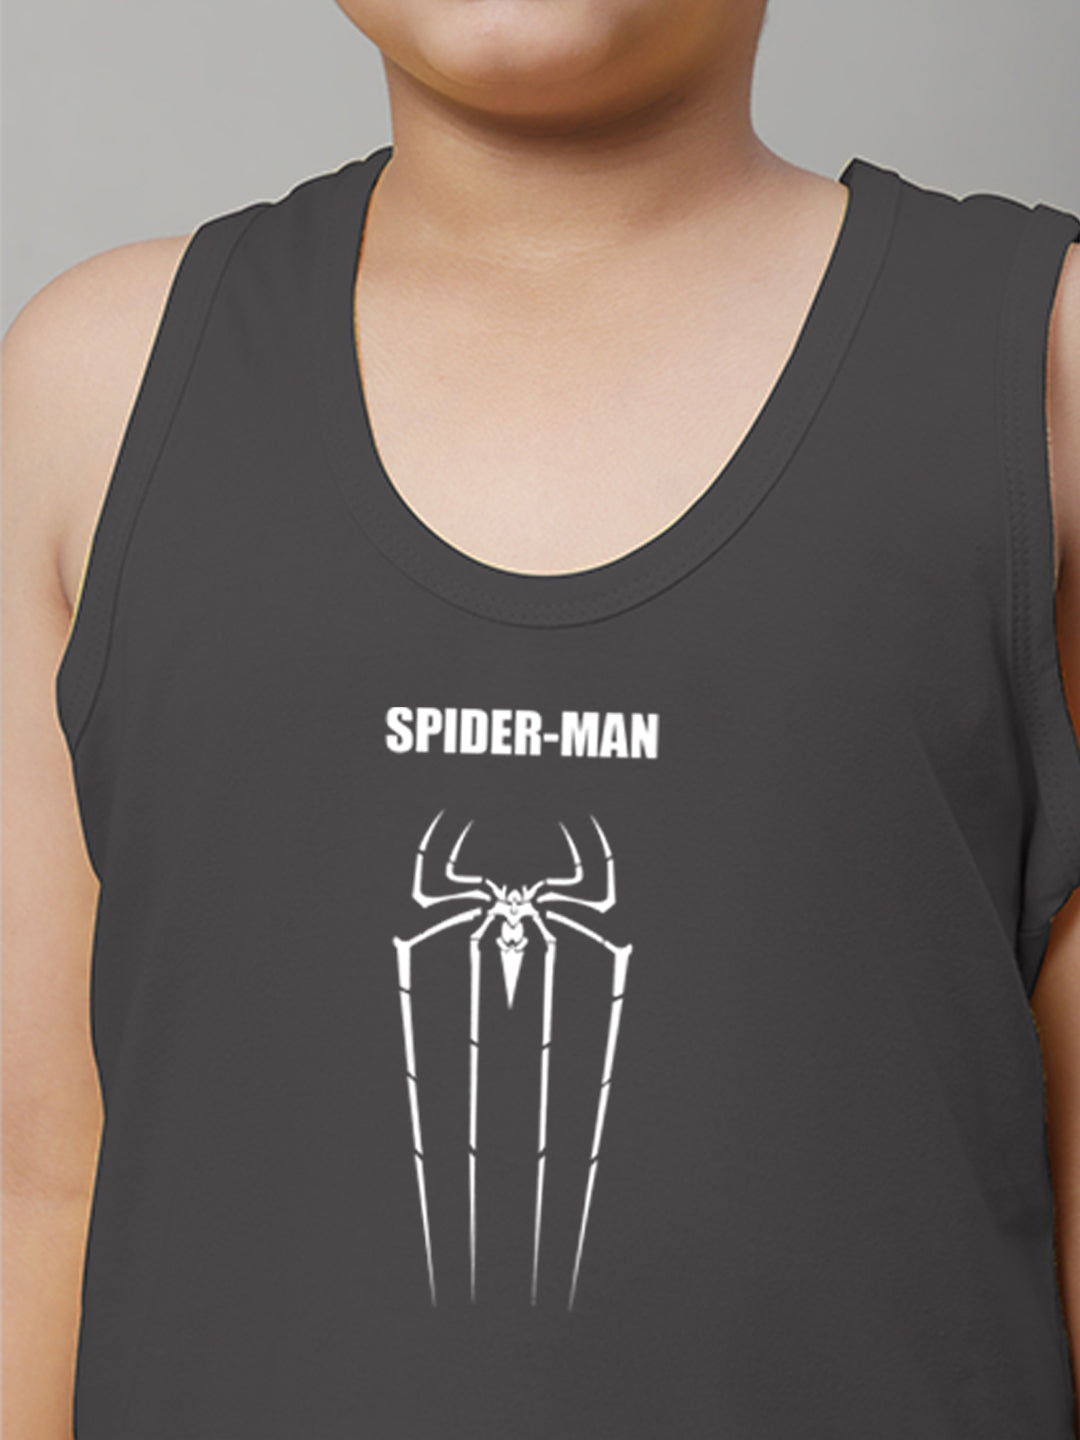 Boys Spiderman Printed Regular Fit Vest - Friskers